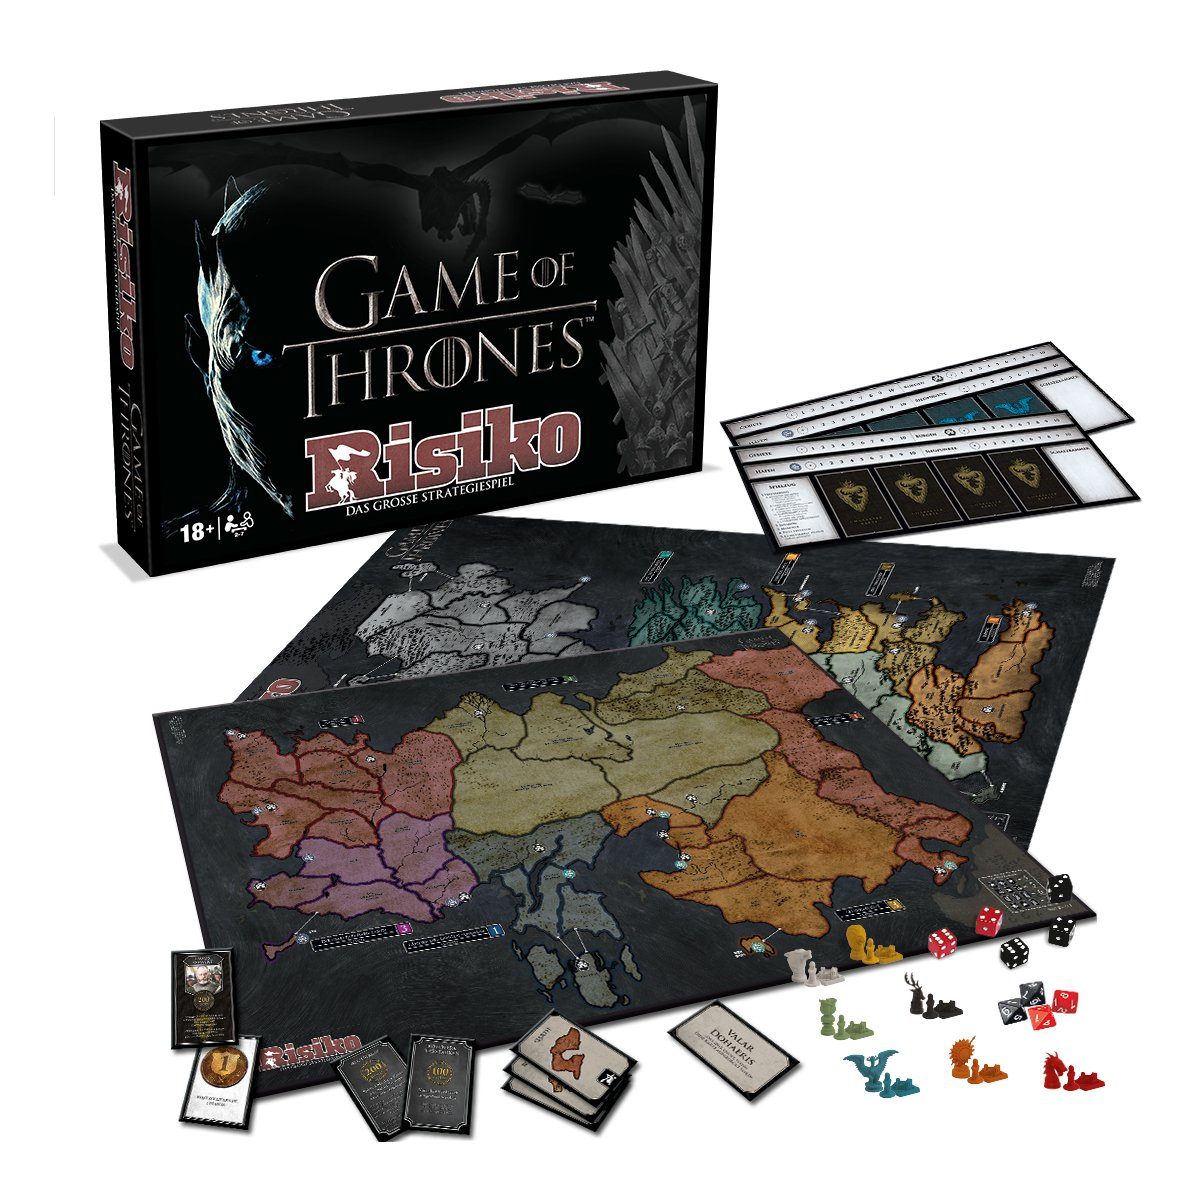 Thrones Risiko (Collectors englisch Spiel, Brettspiel auf of EXTRA Edition) - Winning Set deutsch, inkl. Moves Game